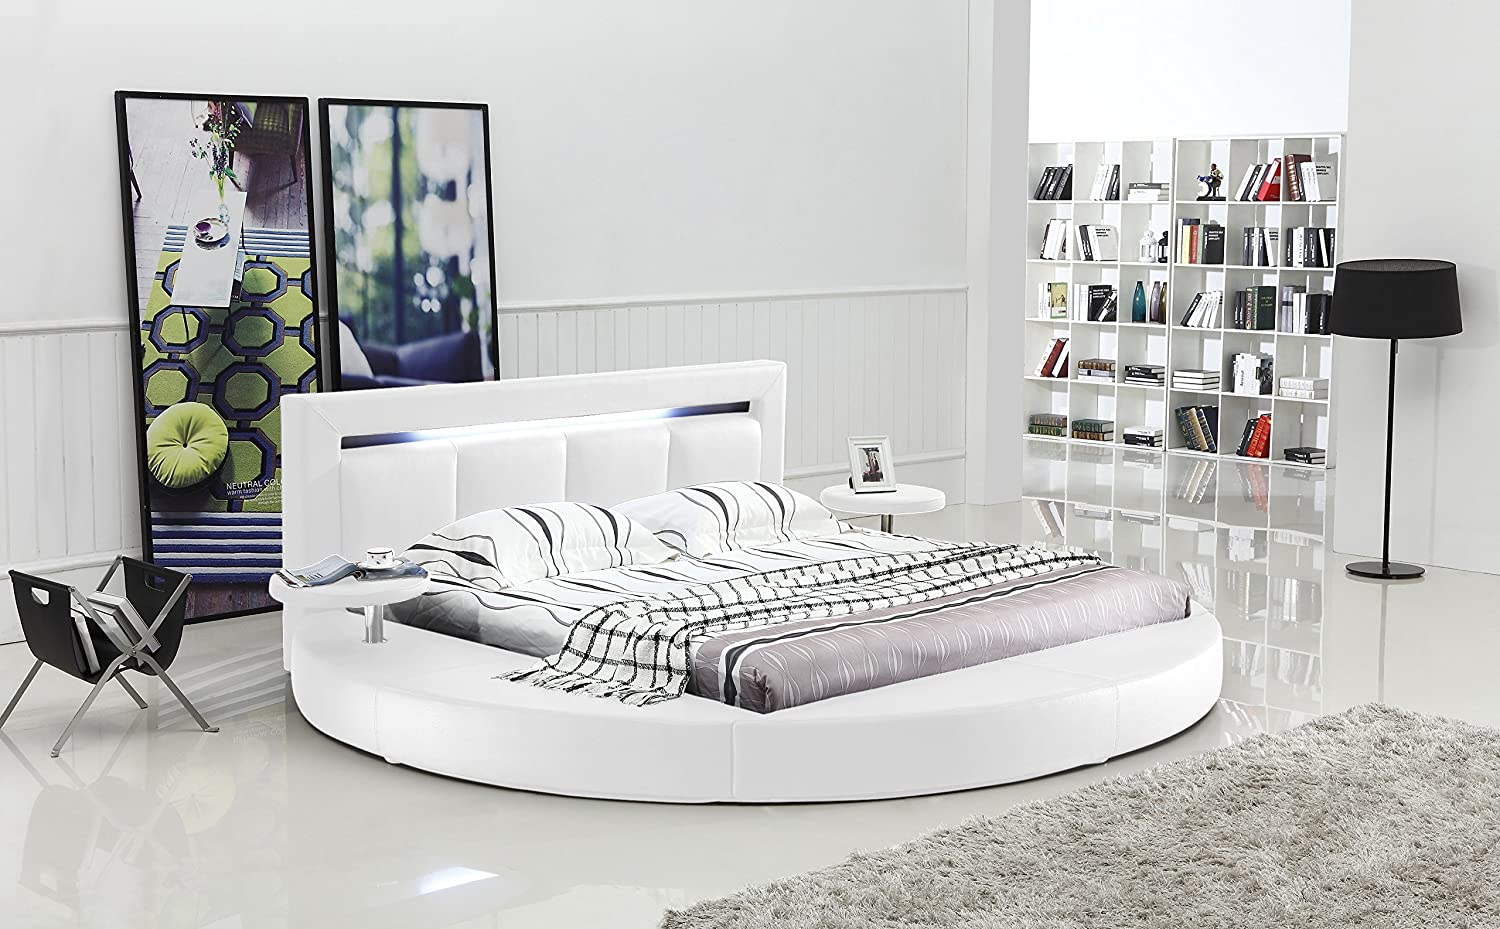 White round bed